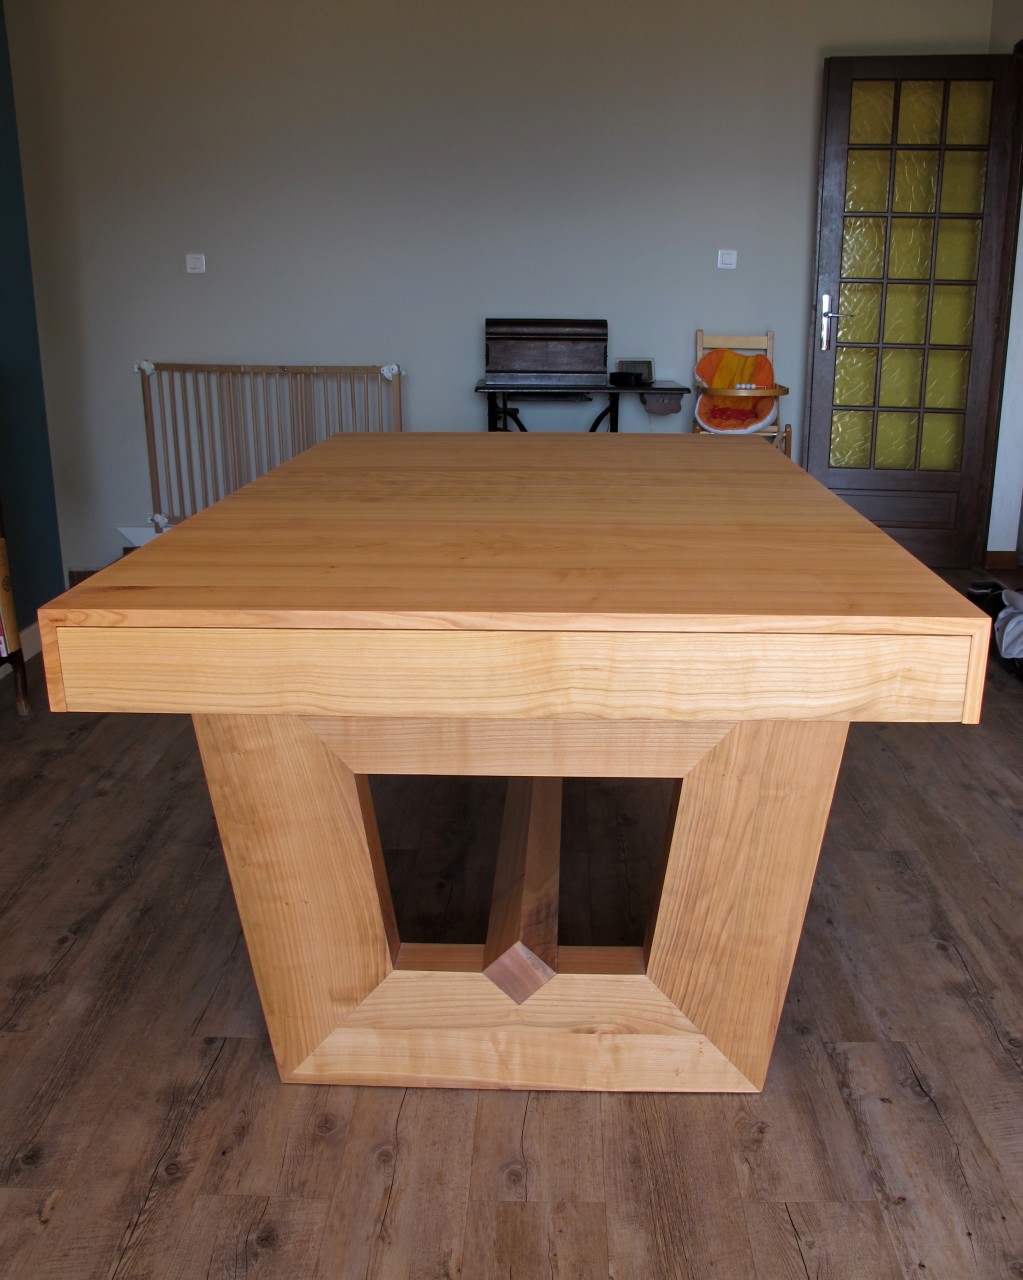 Cette table a deux pieds massif en forme de trapèze reliés au centre par une traverse basse. Les pieds ont une section de 20x7cm.